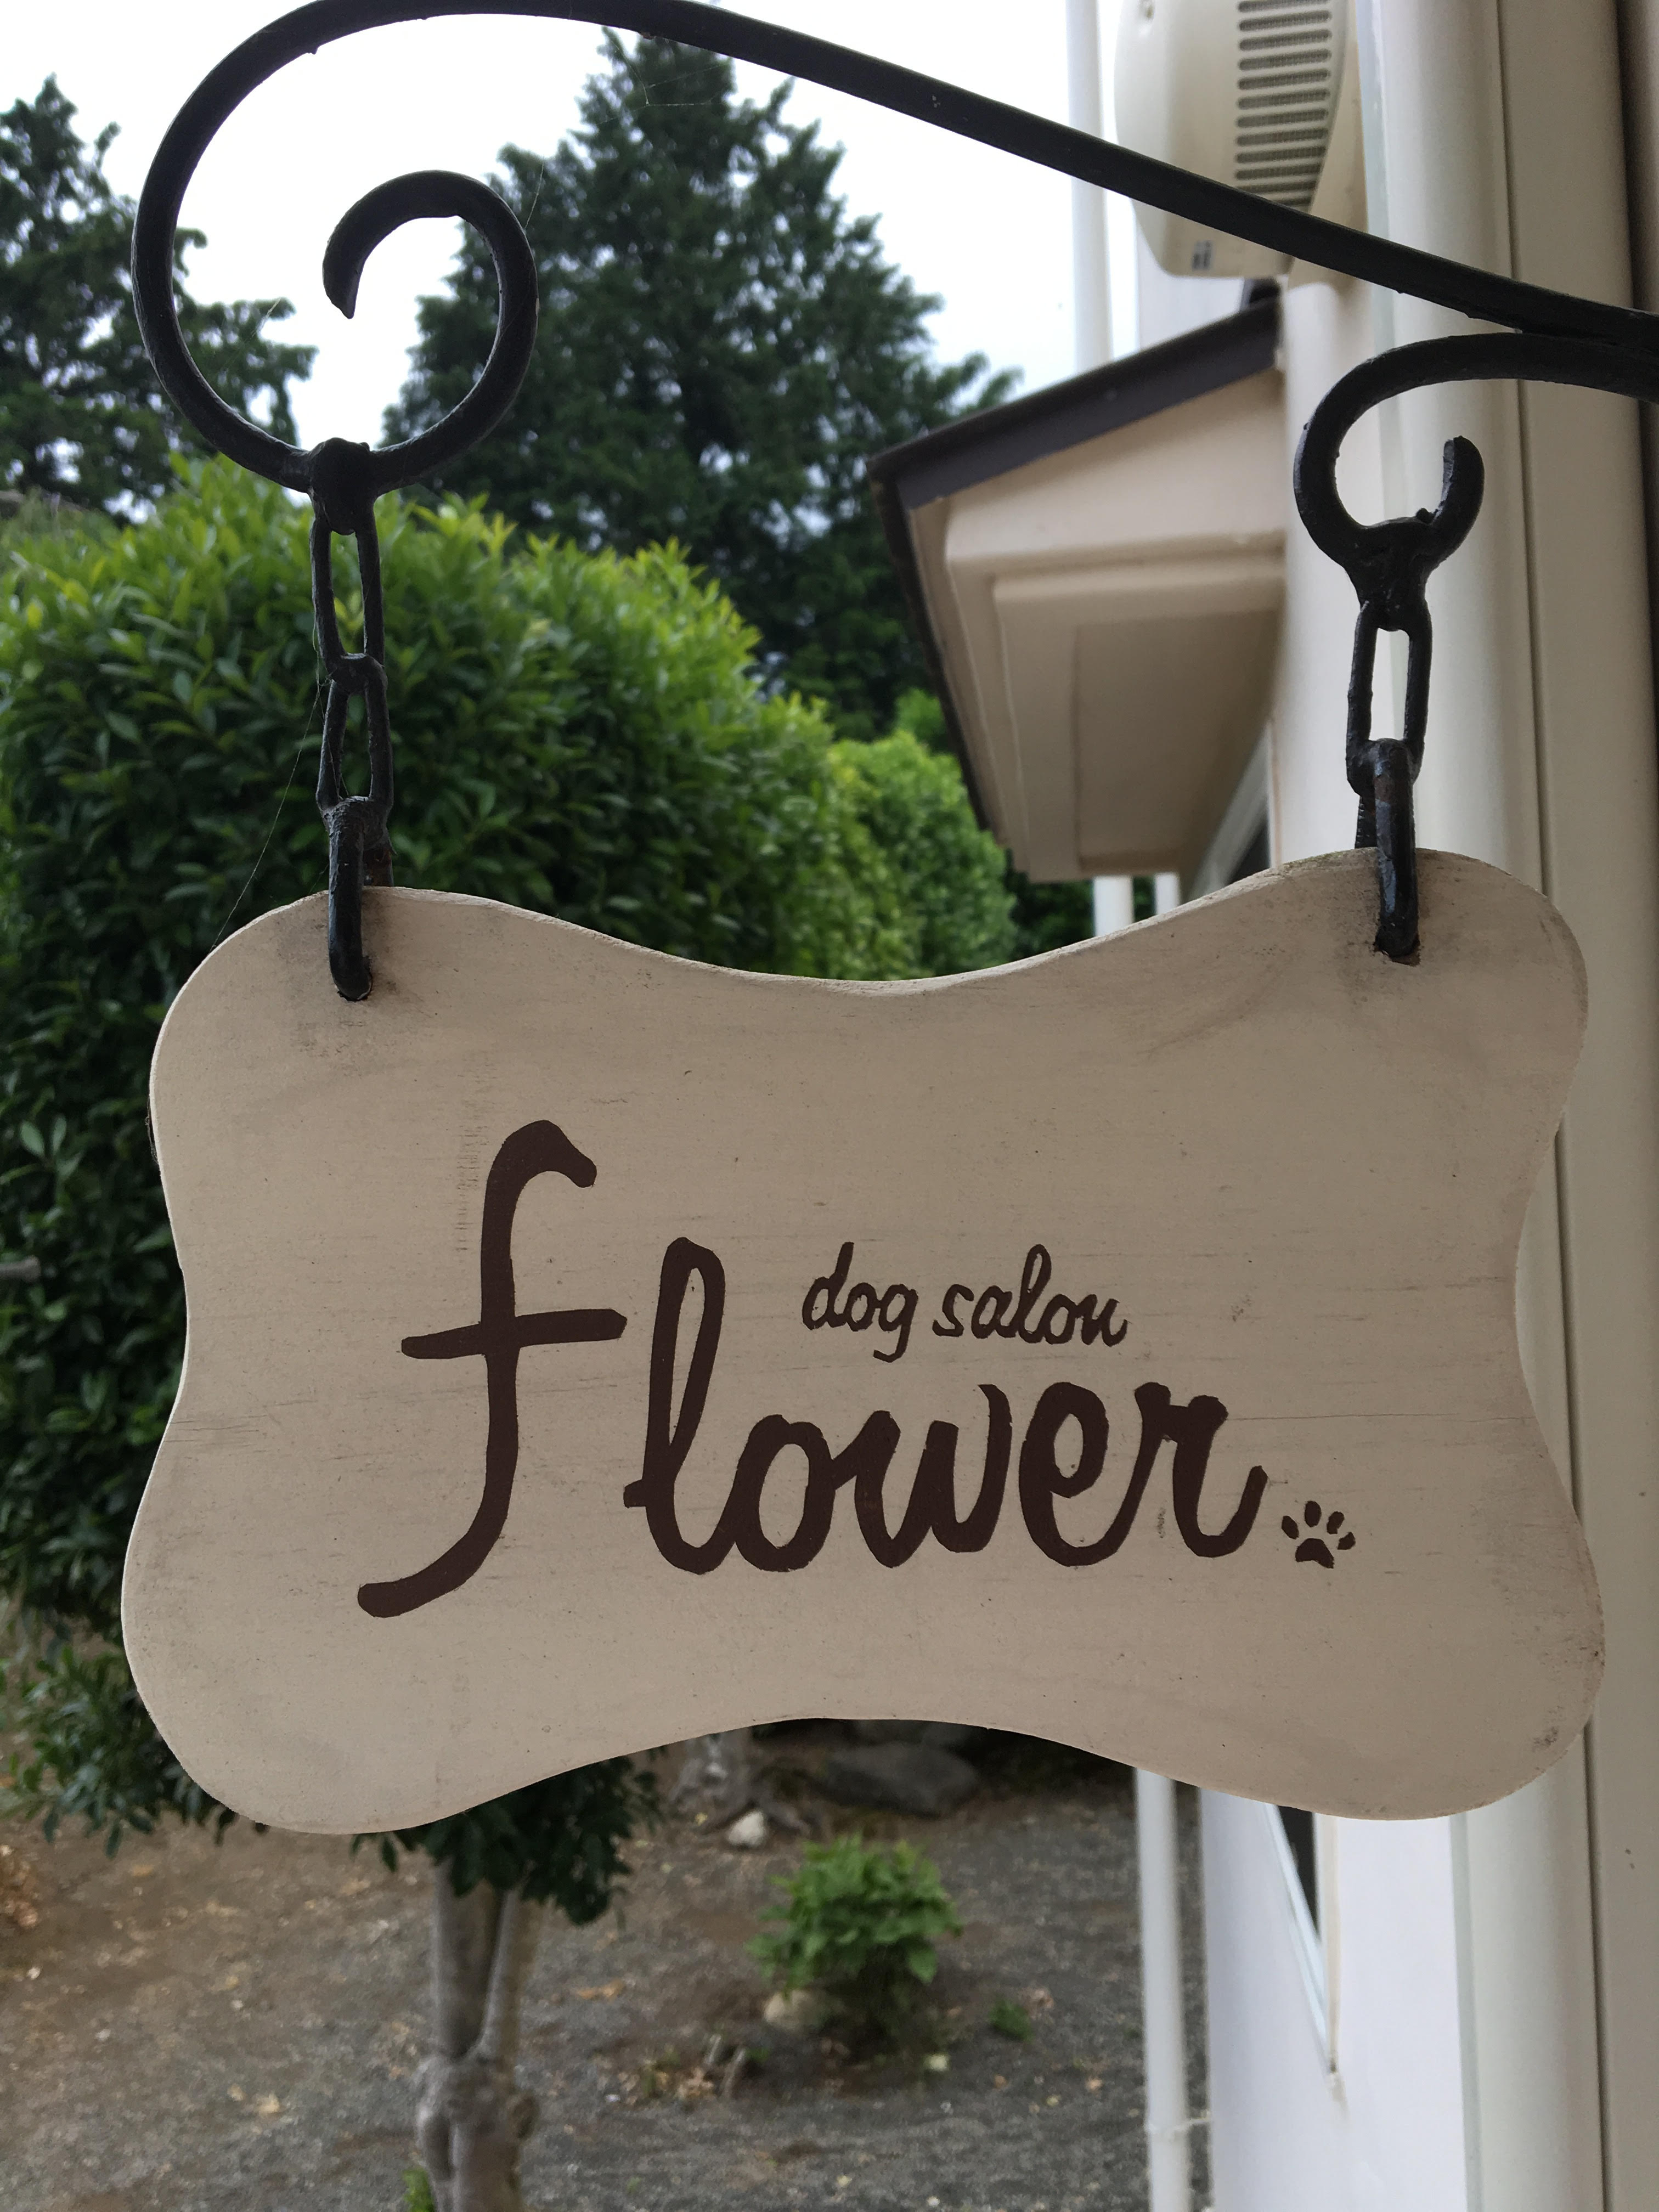 dog's salon flower のサムネイル